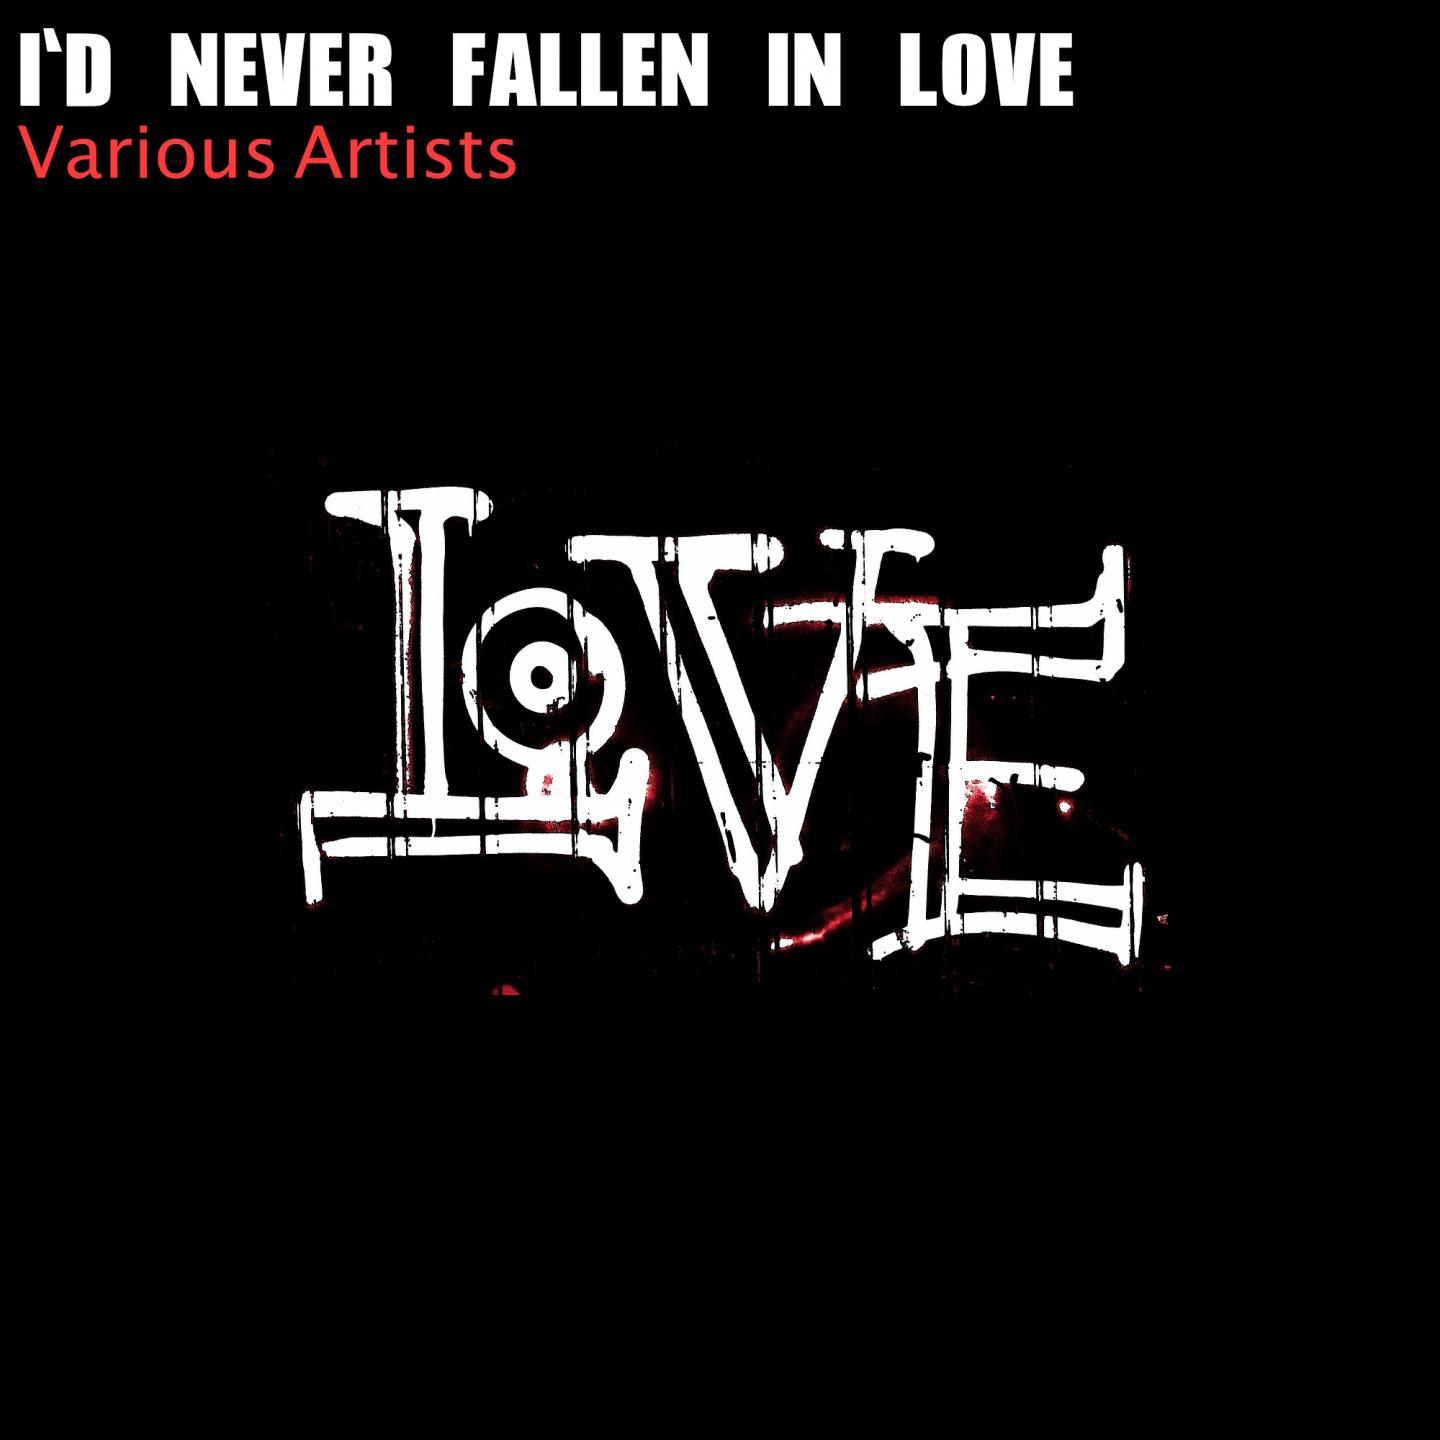 I'd Never Fallen in Love